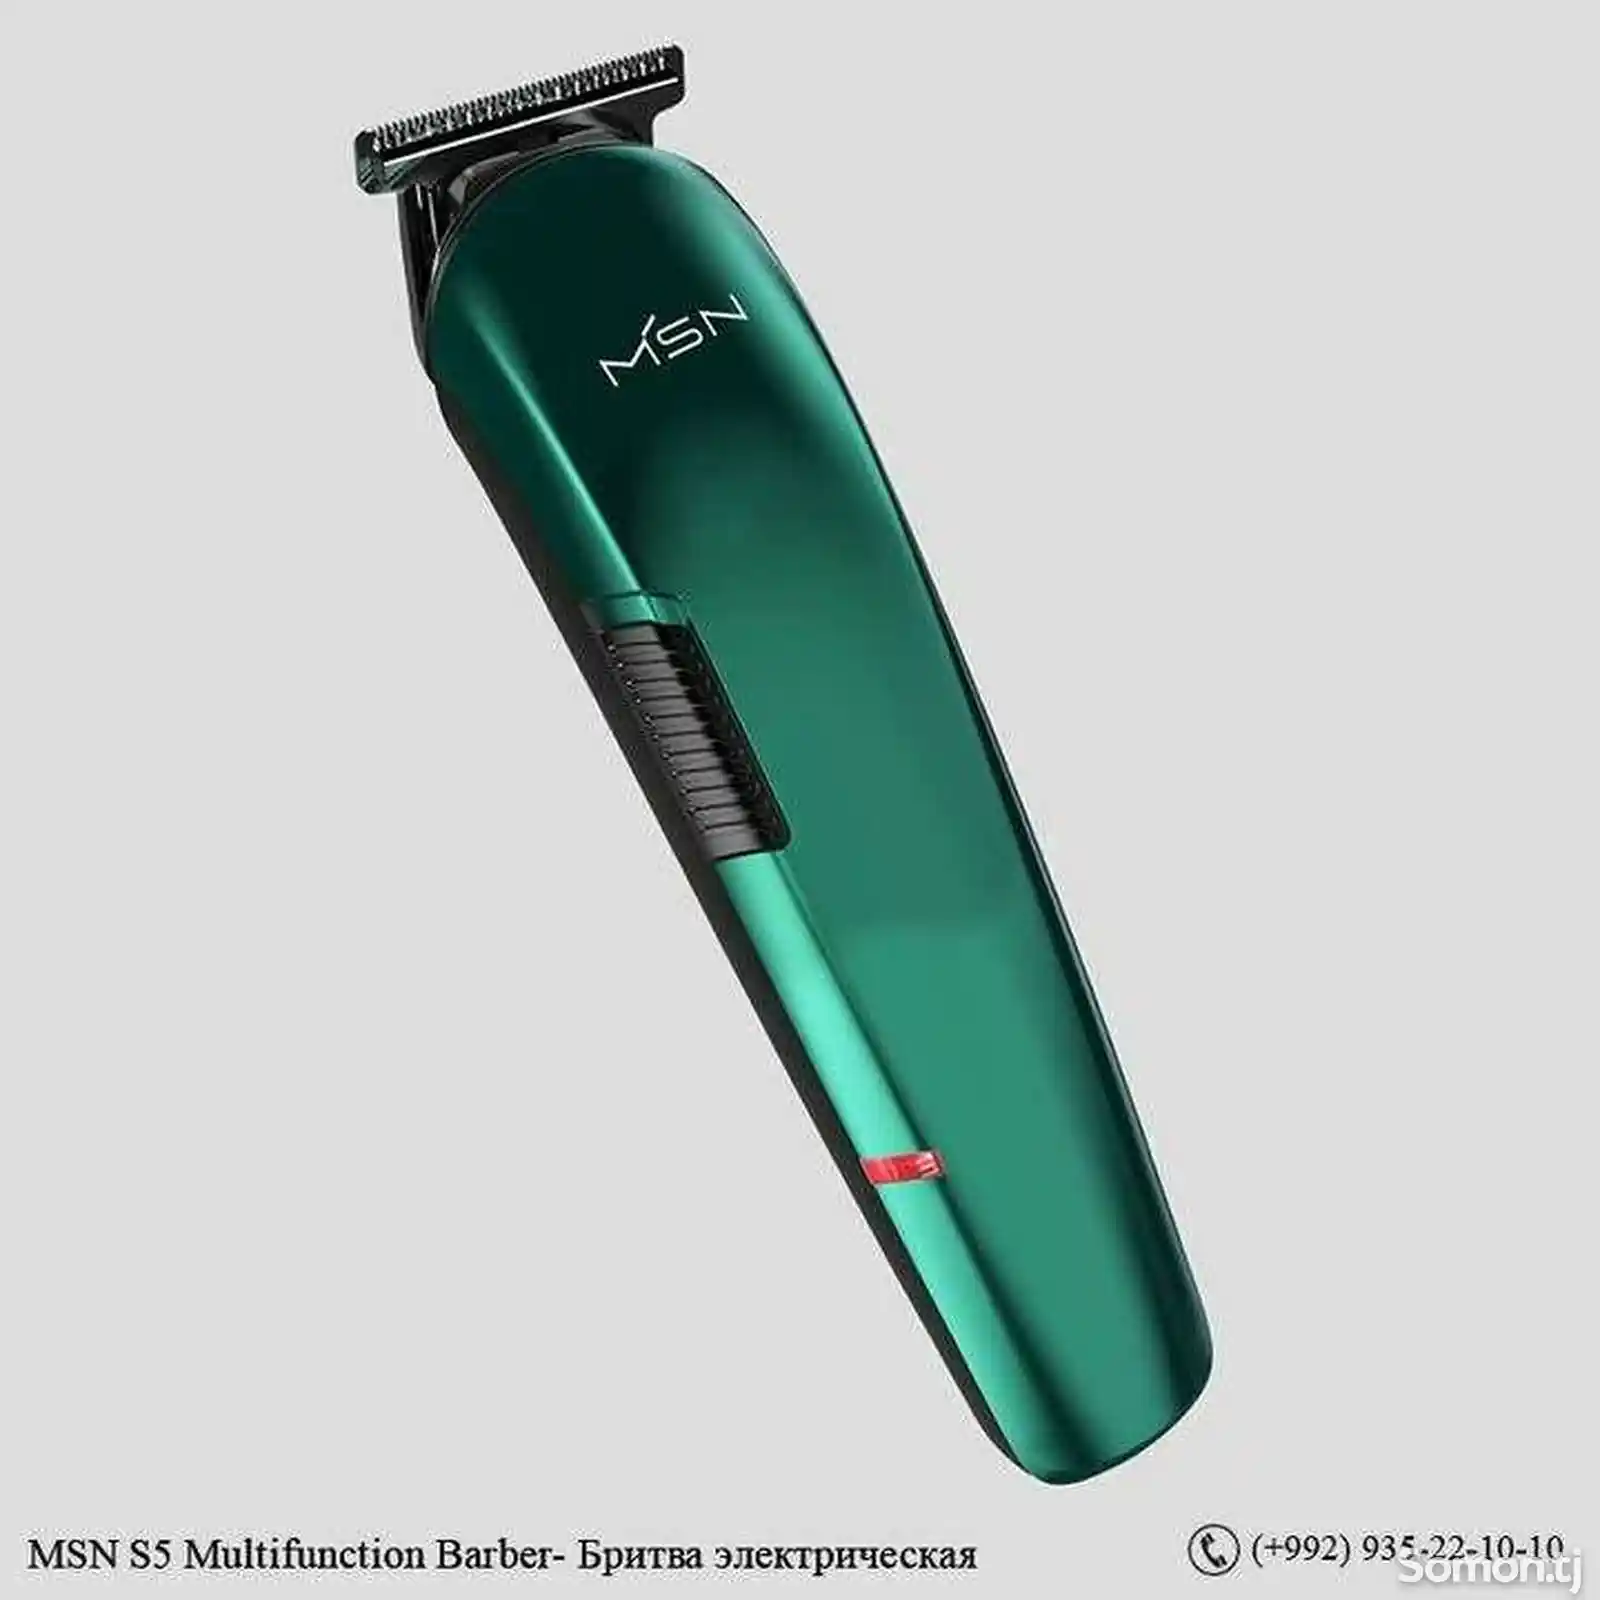 Электрическая бритва MSN S5 Multifunction Barber-2